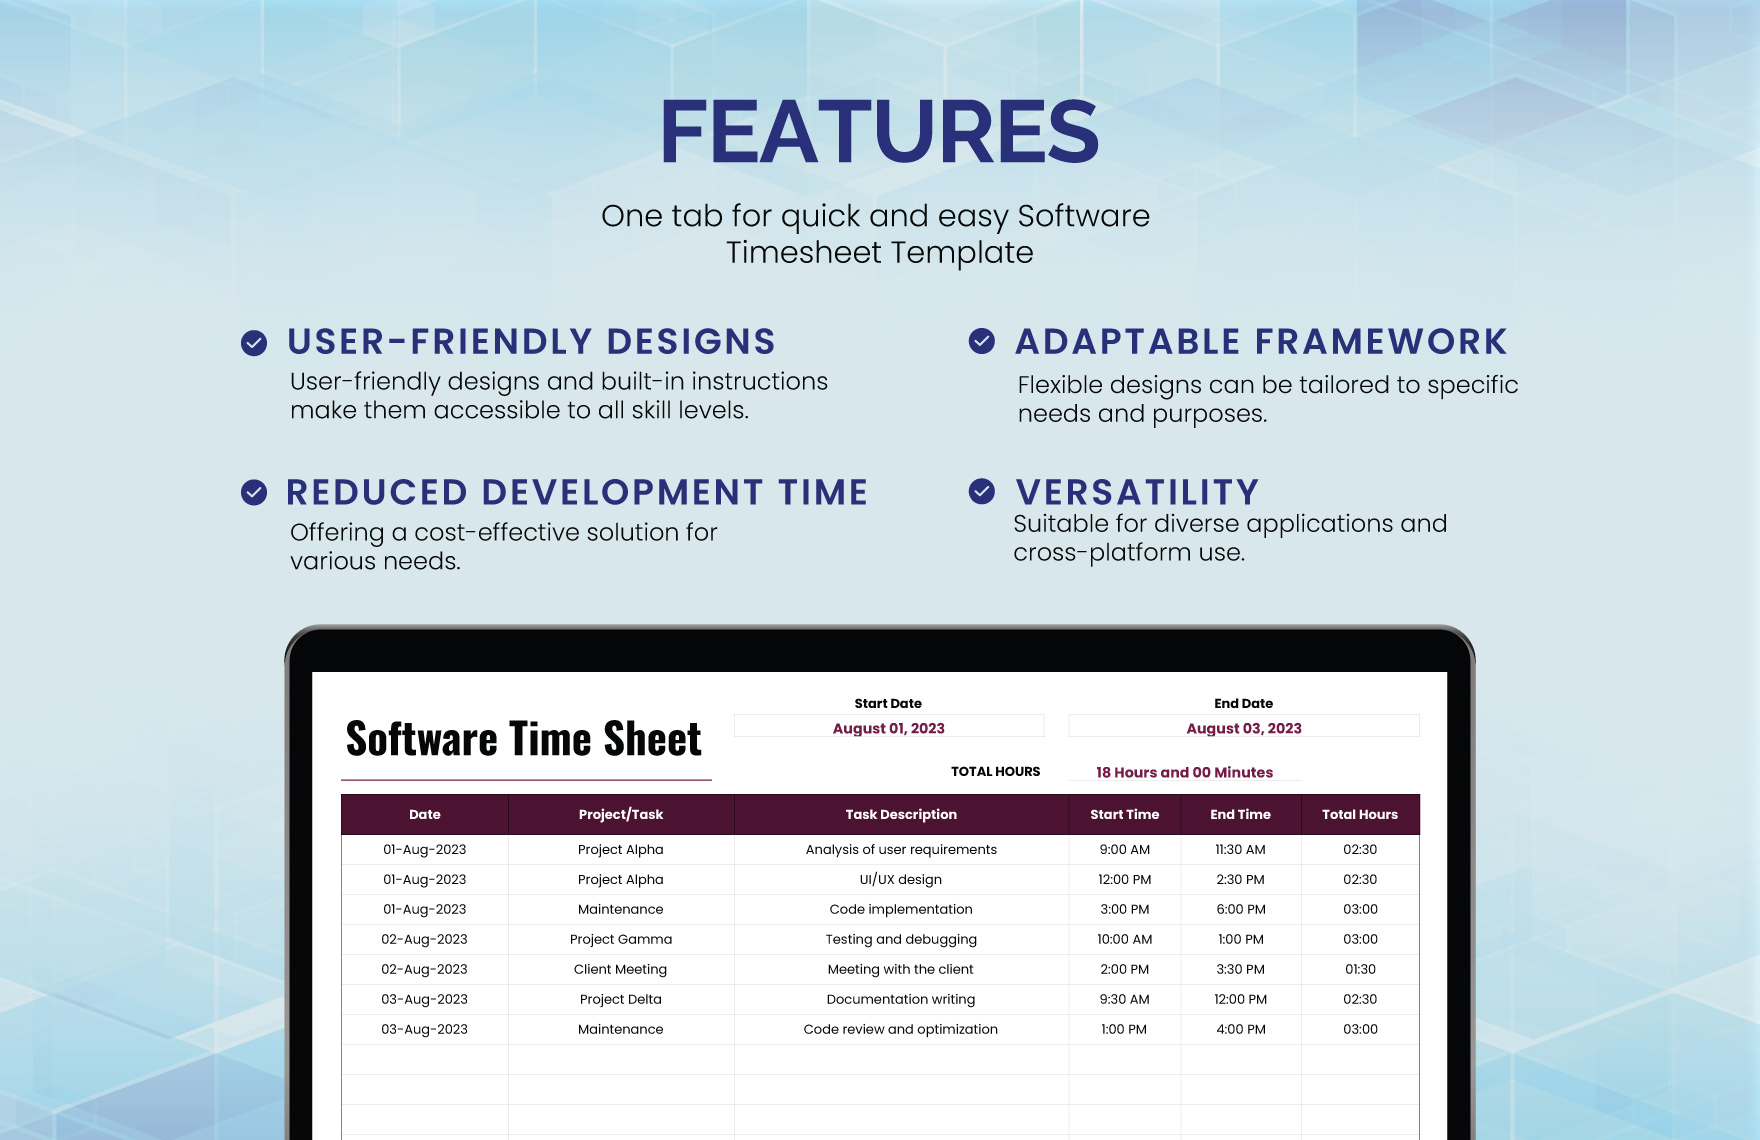 Software Timesheet Template